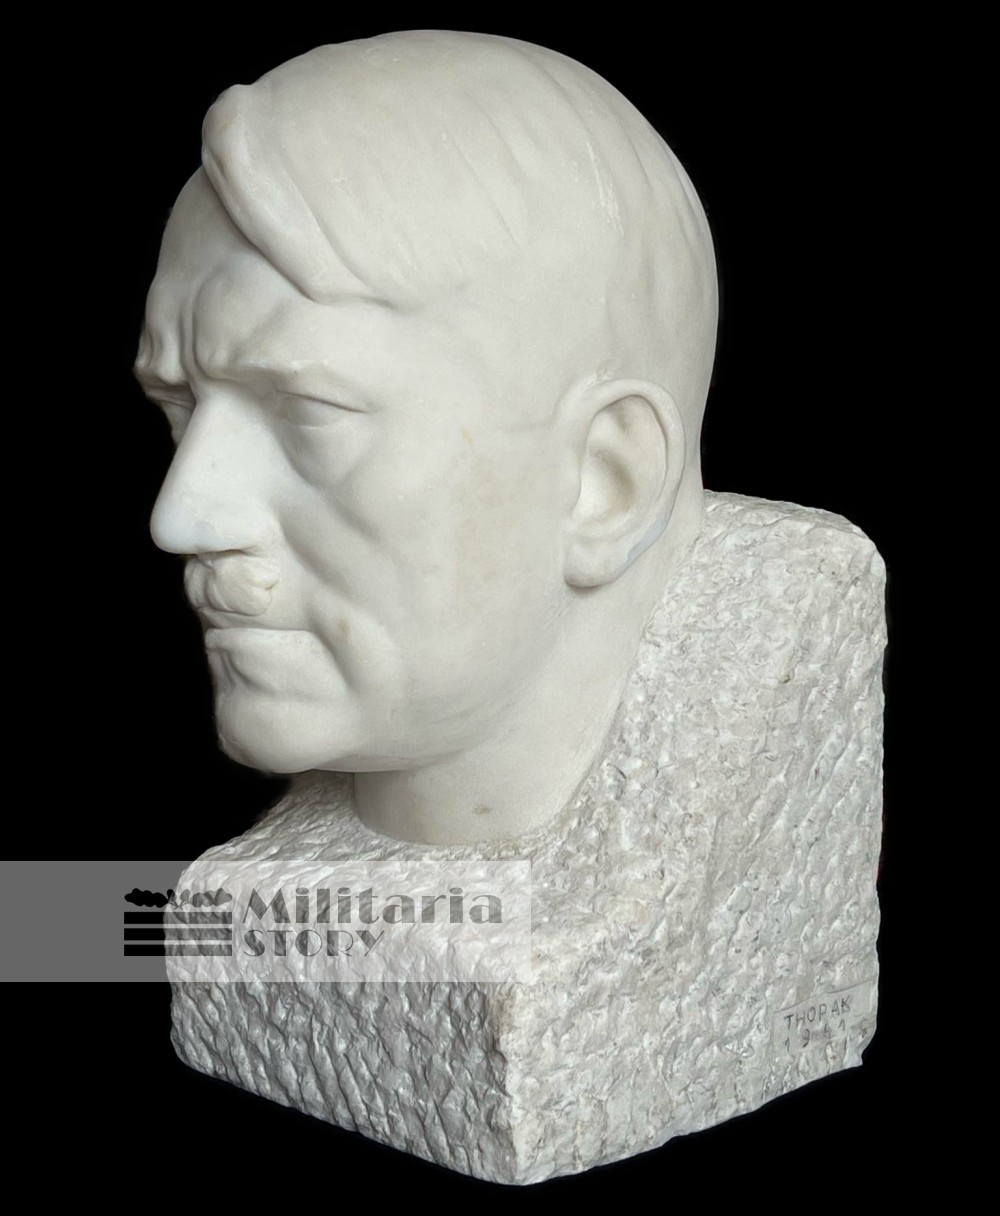 Josef Thorak Adolf Hitler huge Marble Bust  - Josef Thorak Adolf Hitler huge Marble Bust : German Third Reich Art